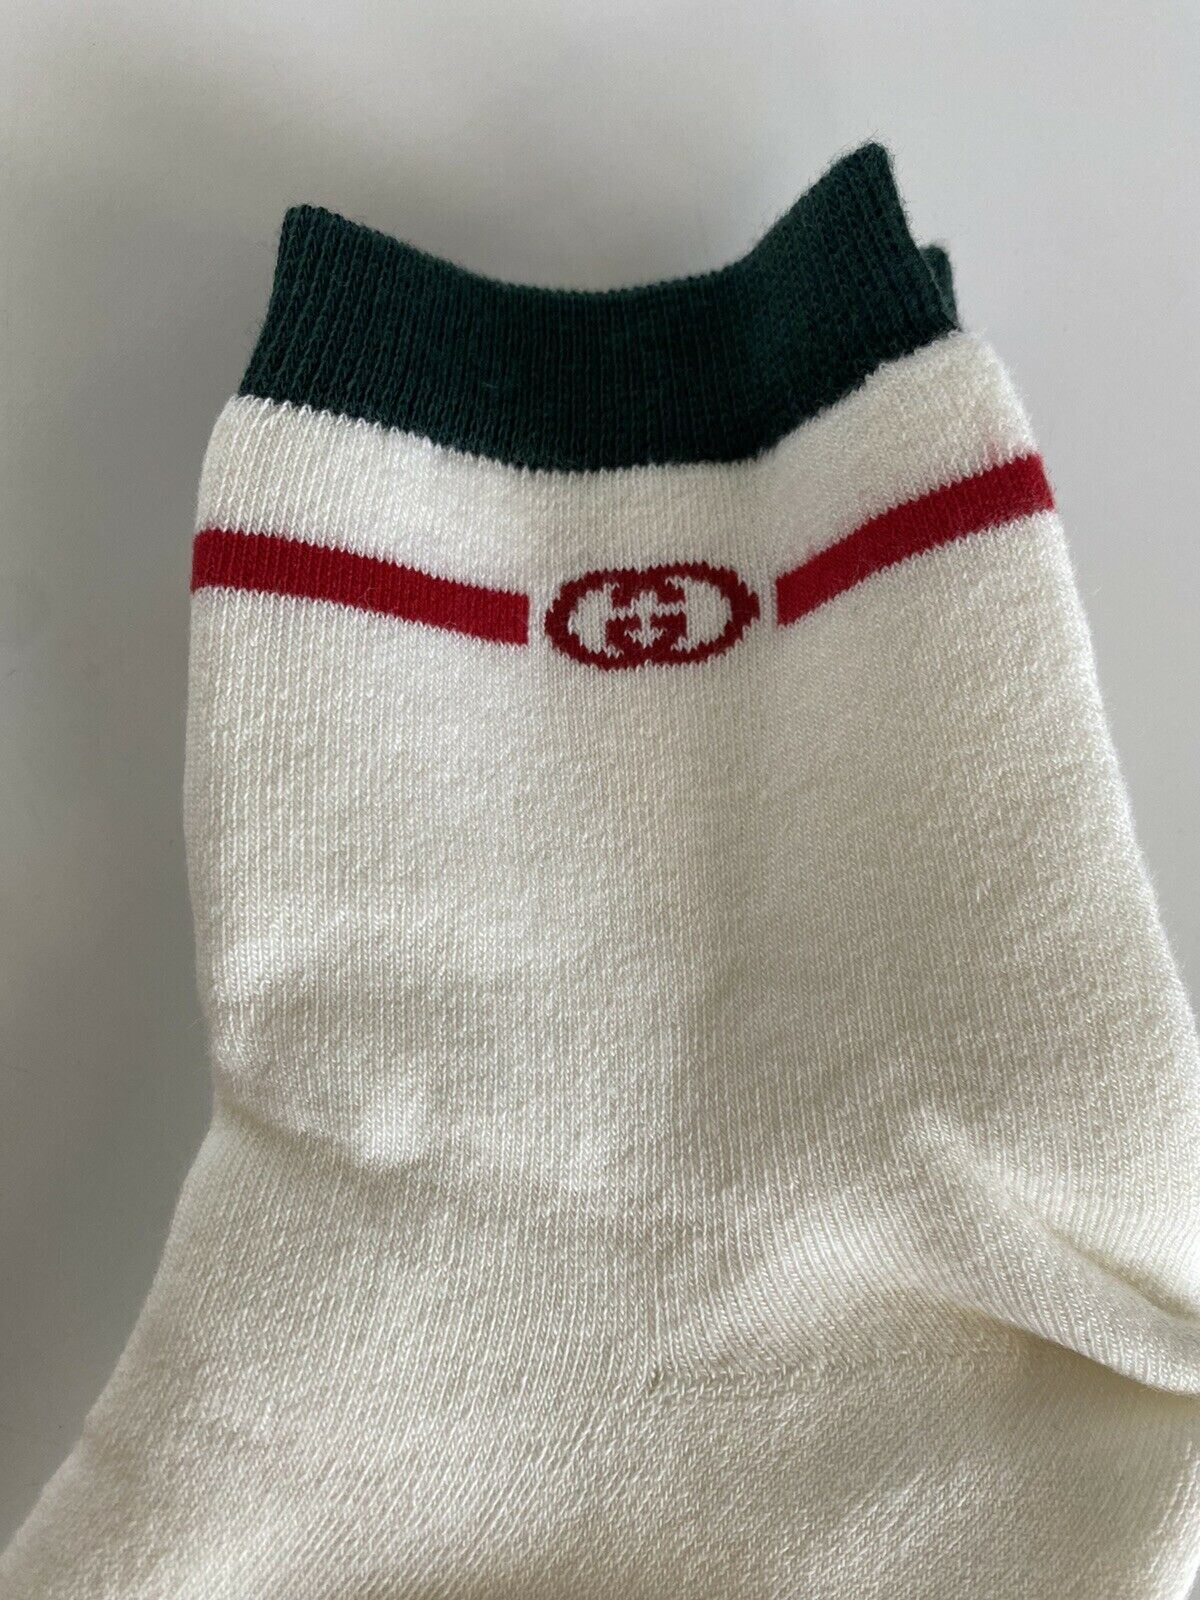 Neu mit Etikett: Gucci Lit Spon Weiß/Grün/Rot Socken ML (24–26 cm), hergestellt in Italien, 604040 